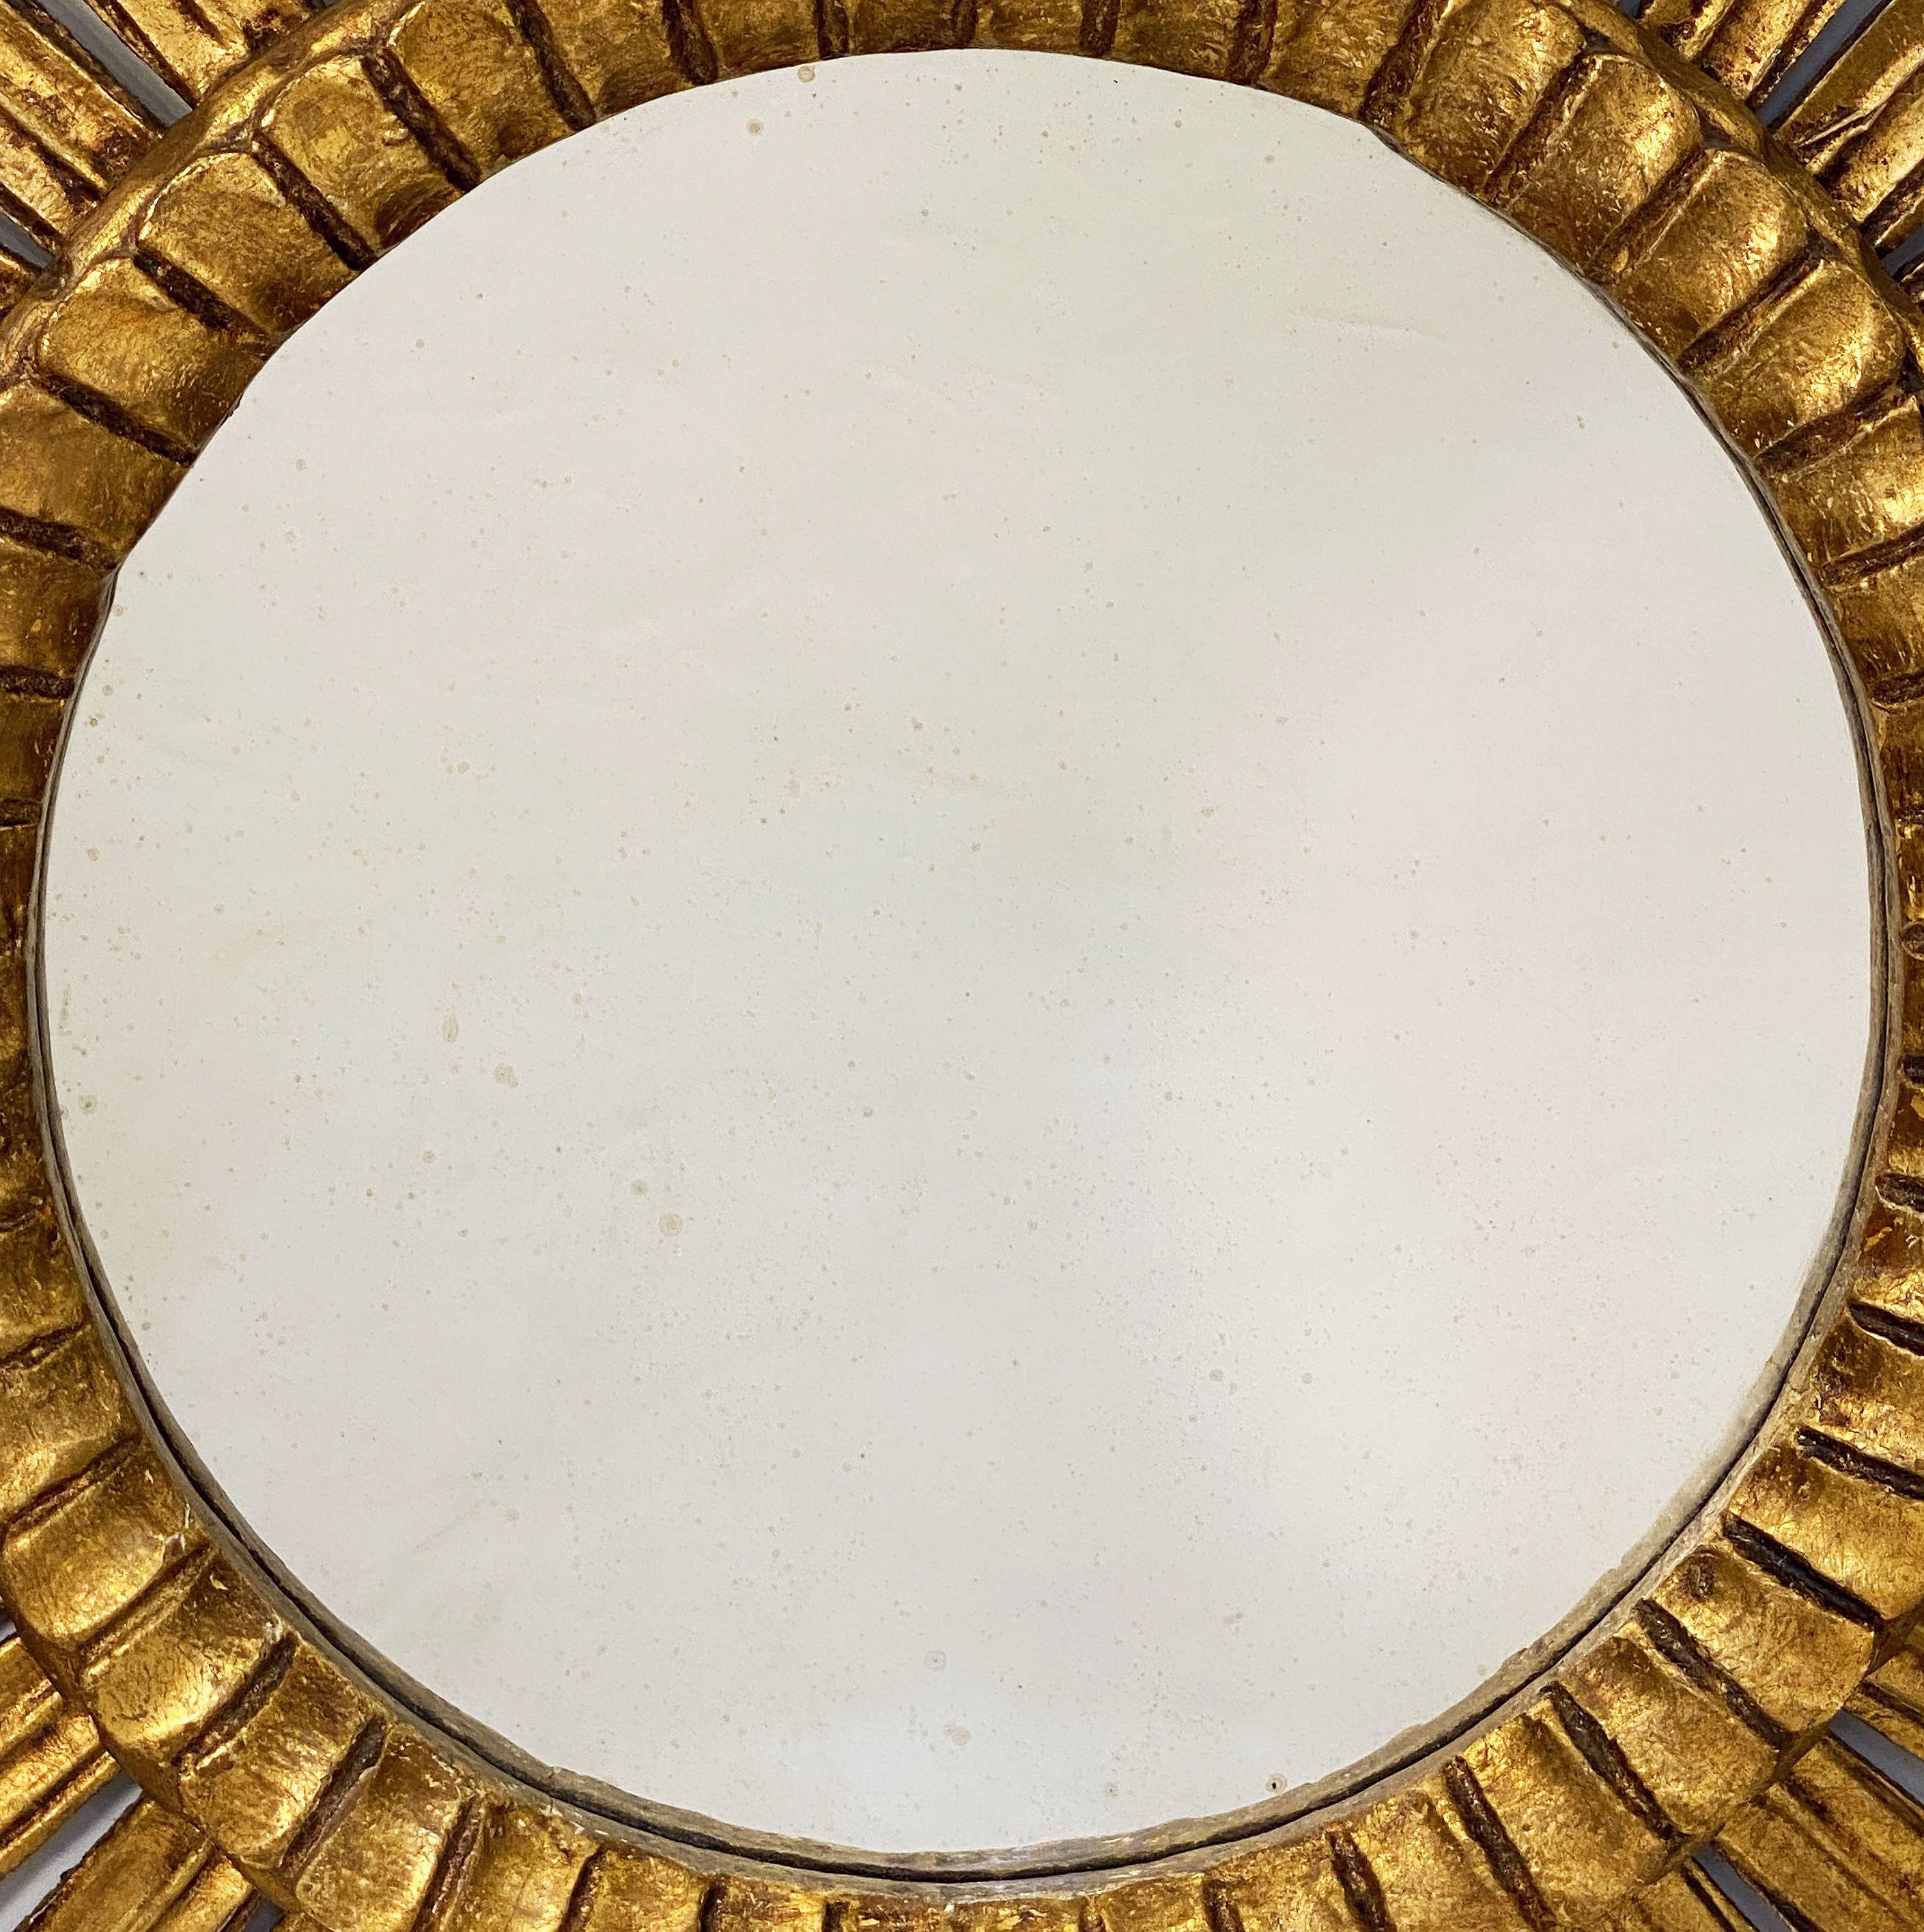 Gilt Starburst or Sunburst Mirror from France (Diameter 26) 4